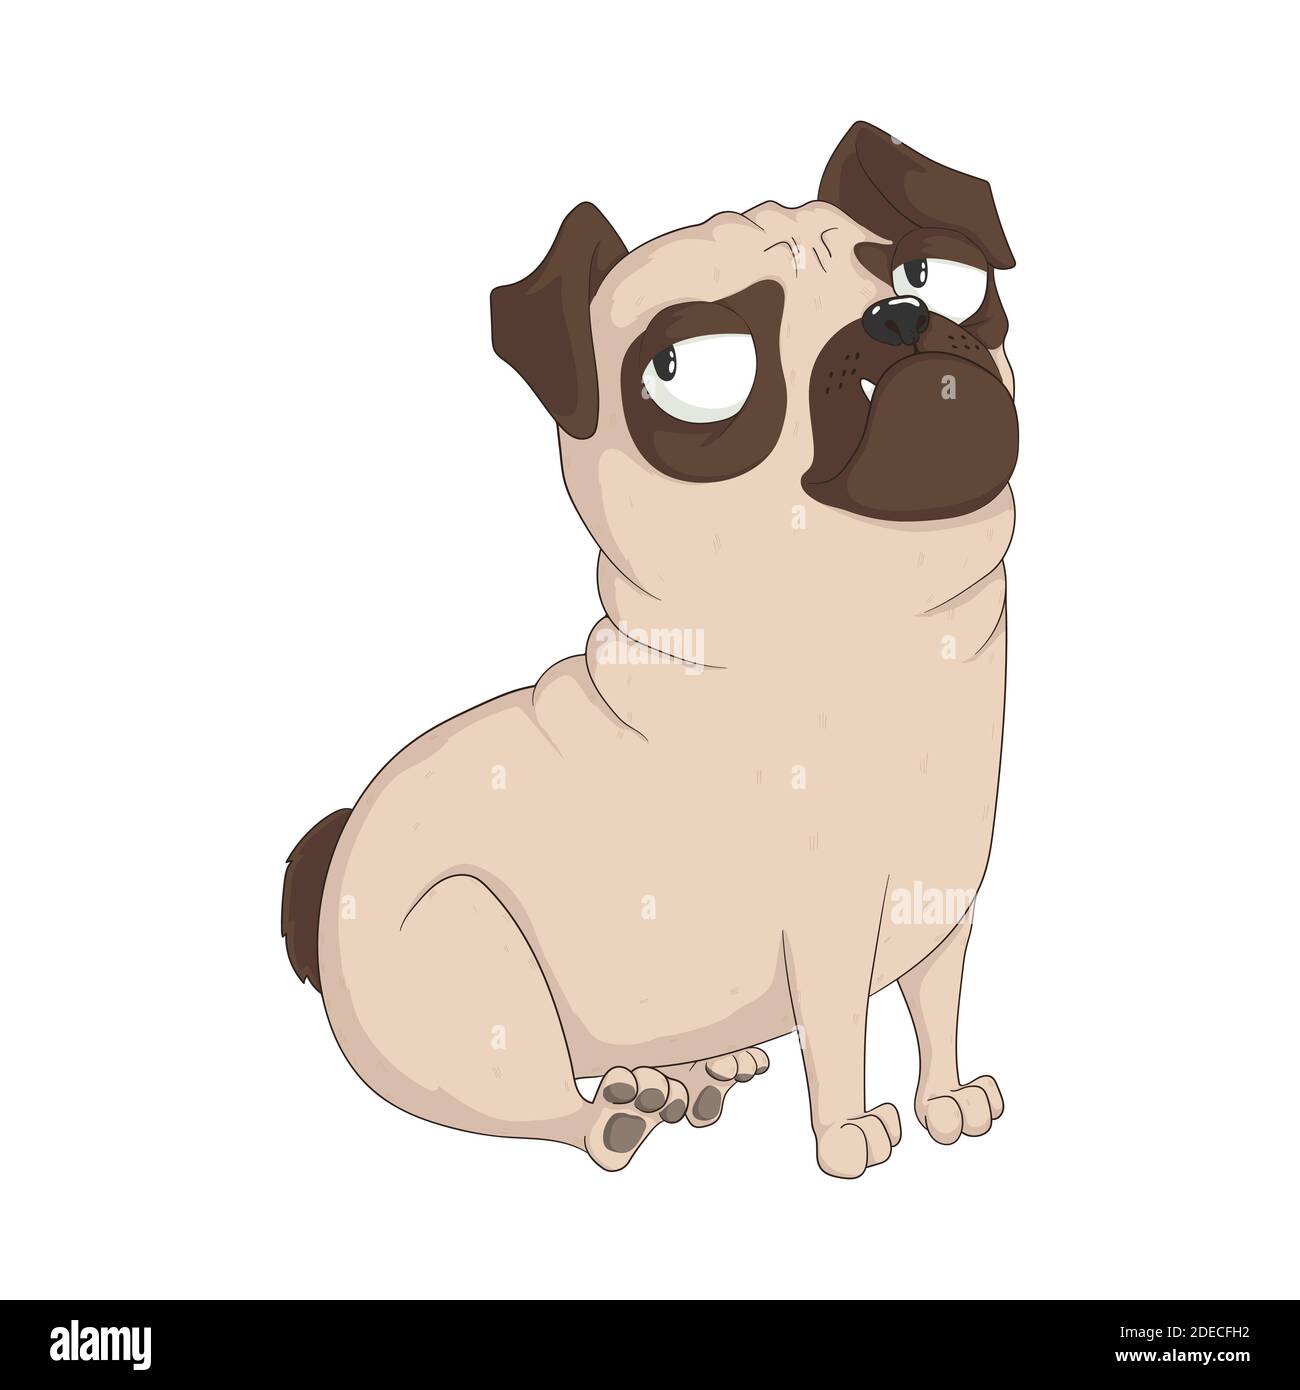 Niedliche sitzende Grambler Mops Hund. Vektor Cartoon handgezeichnete Illustration. Isolation auf weißem Hintergrund. Für T-Shirt-Design, Poster, Karten und Drucke. Stock Vektor